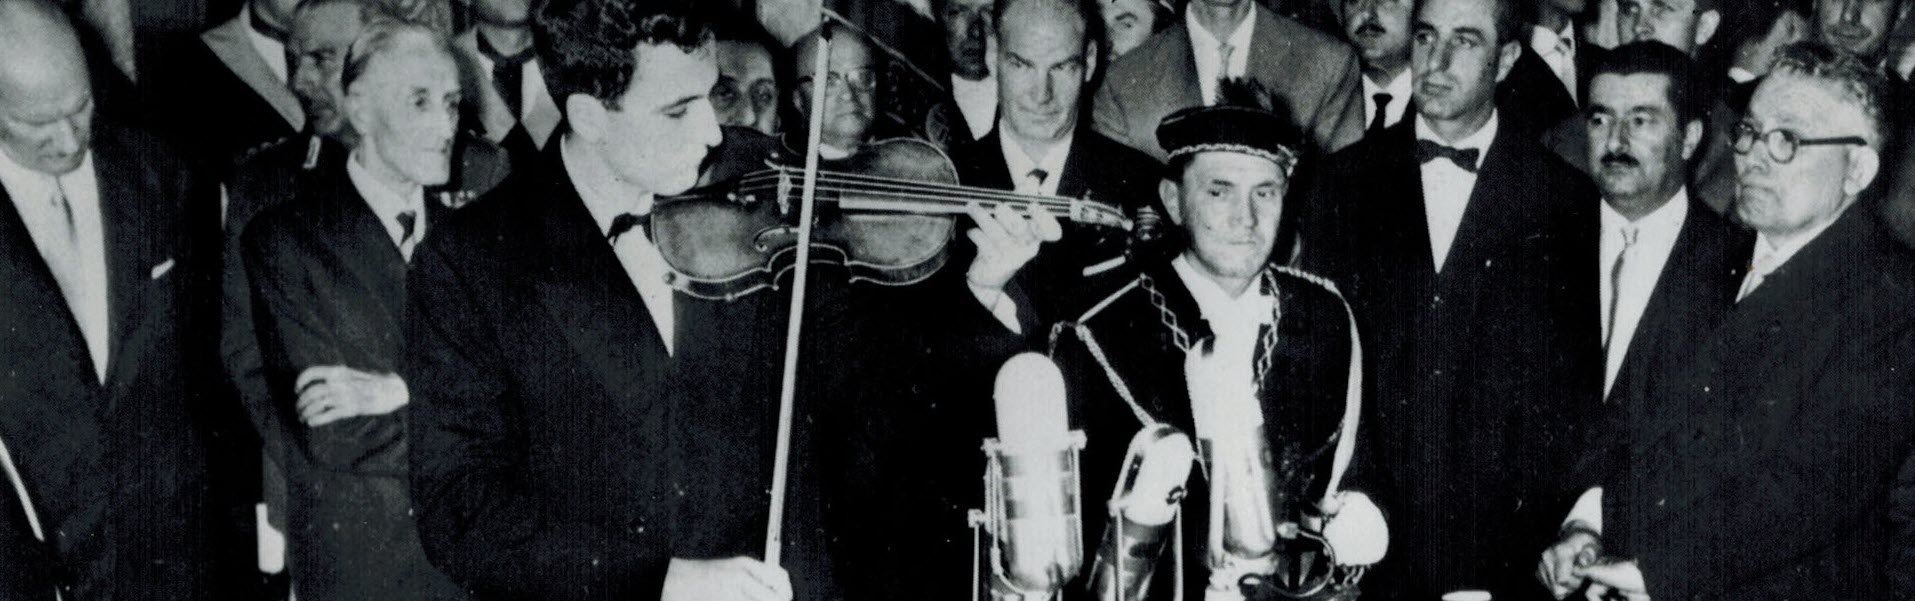 Salvatore Accardo vincitore dell'edizione 1958 del Premio Paganini 